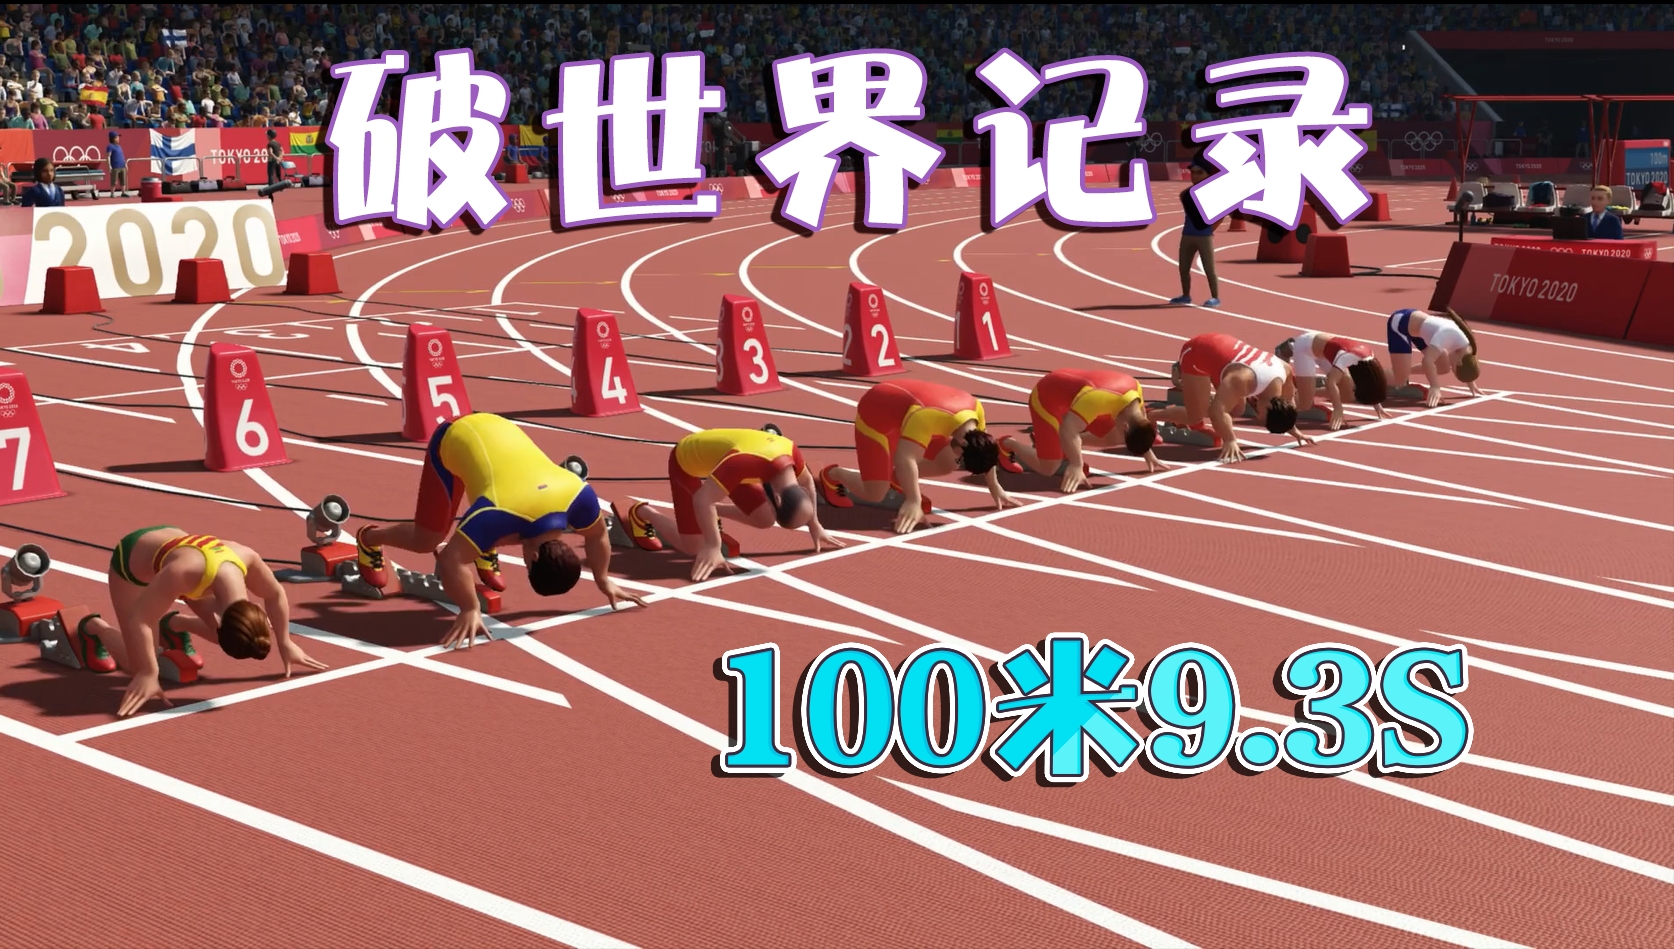 2020奥运会100米赛跑100多斤的胖子贱圣跑出了93s的世界记录